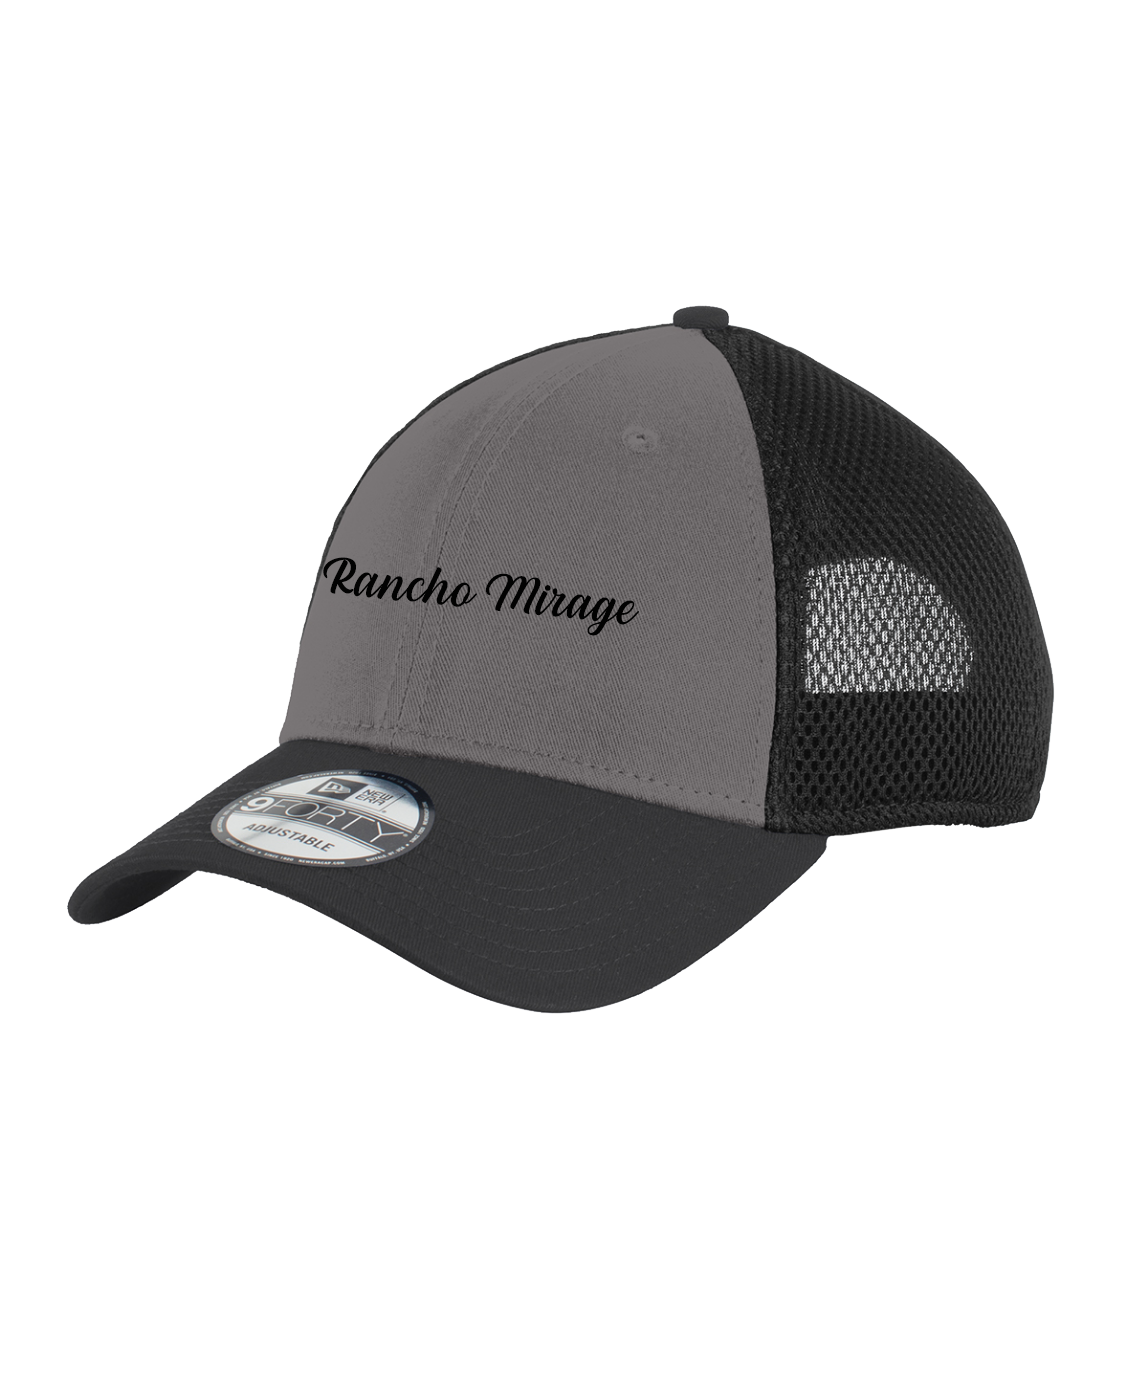 Rancho Mirage - New Era® - Snapback Contrast Front Mesh Cap